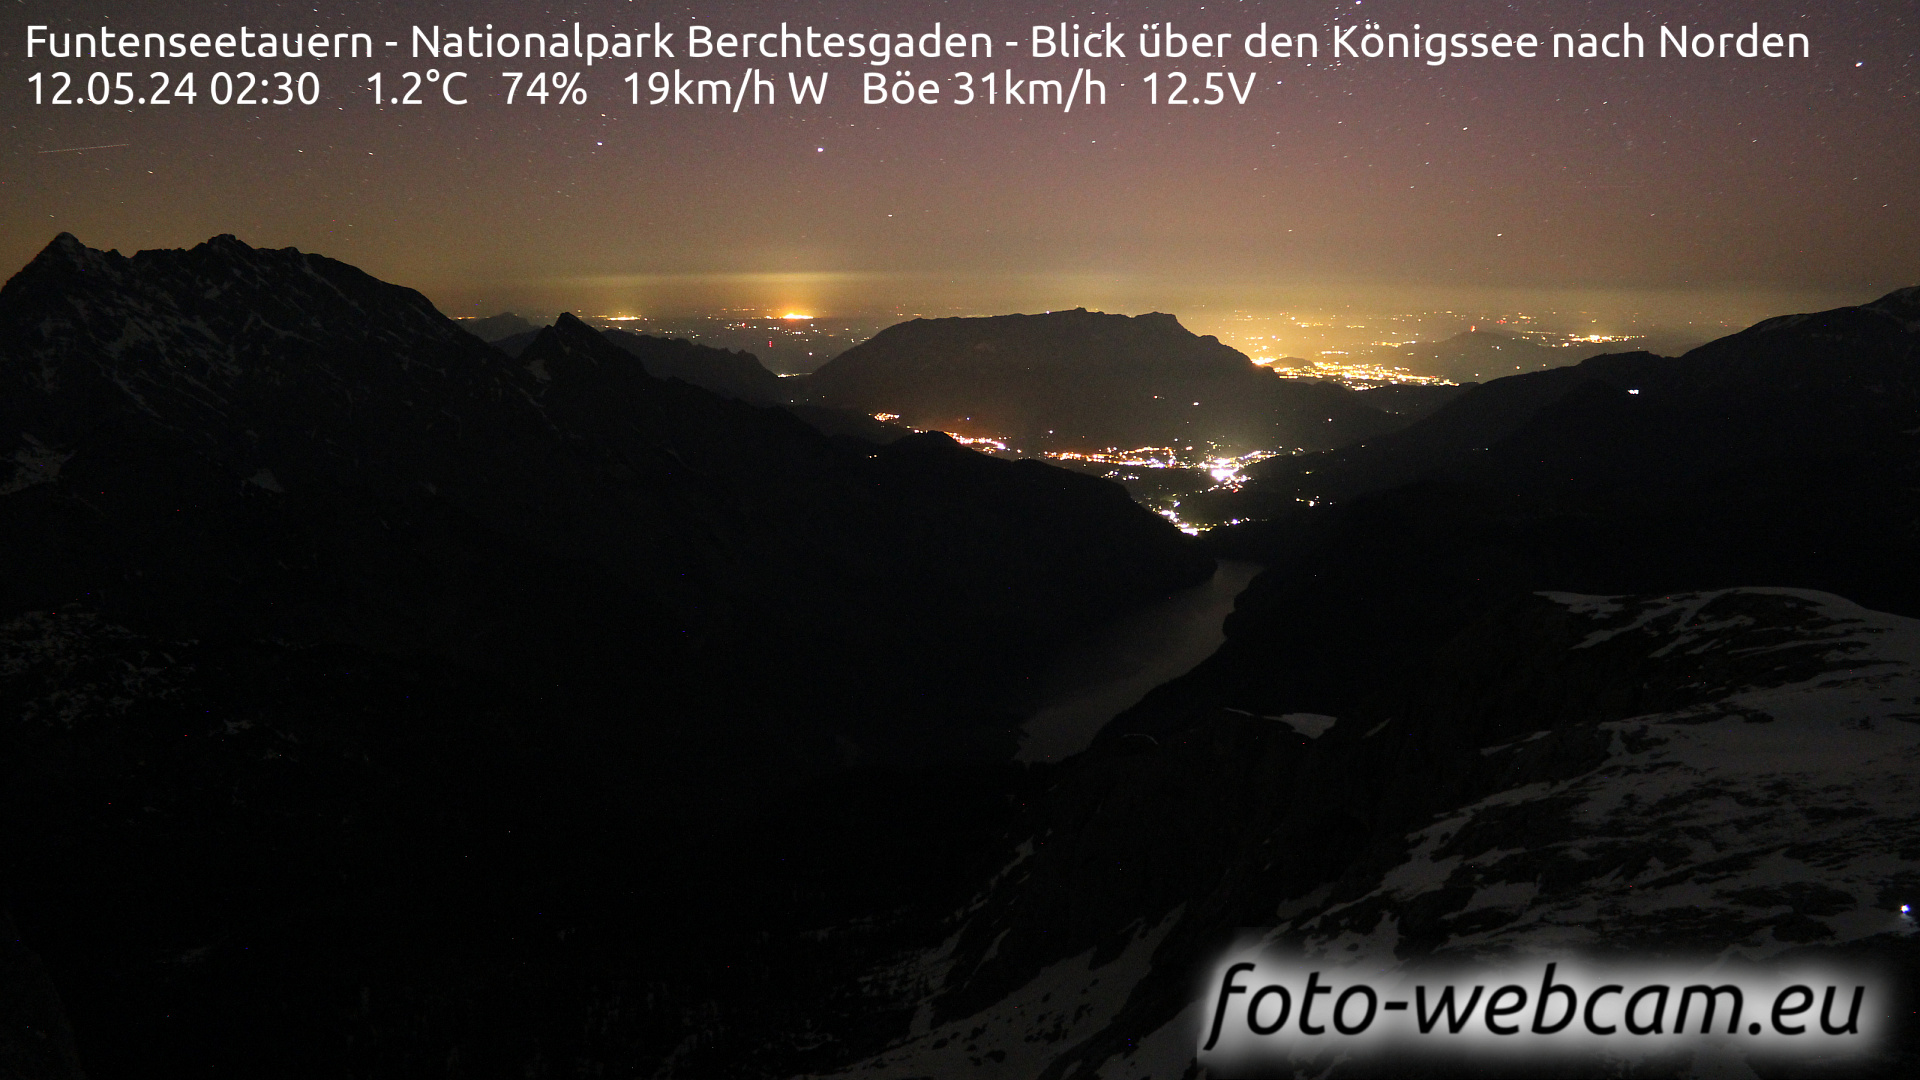 Berchtesgaden Tor. 02:48